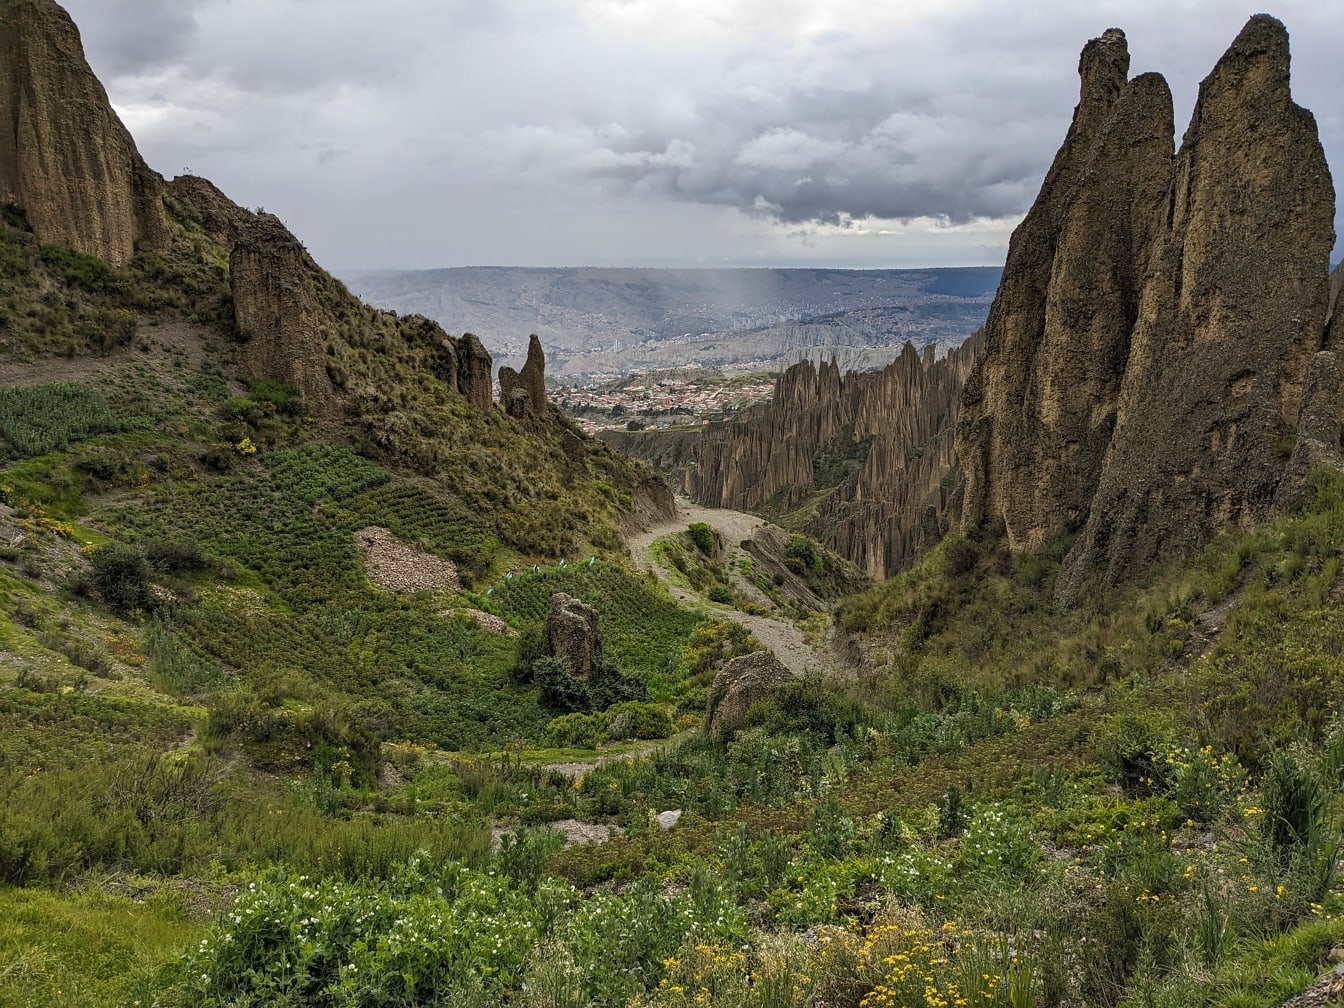 Thung lũng linh hồn trong công viên tự nhiên ở Bolivia với những vách đá cao sắc nhọn